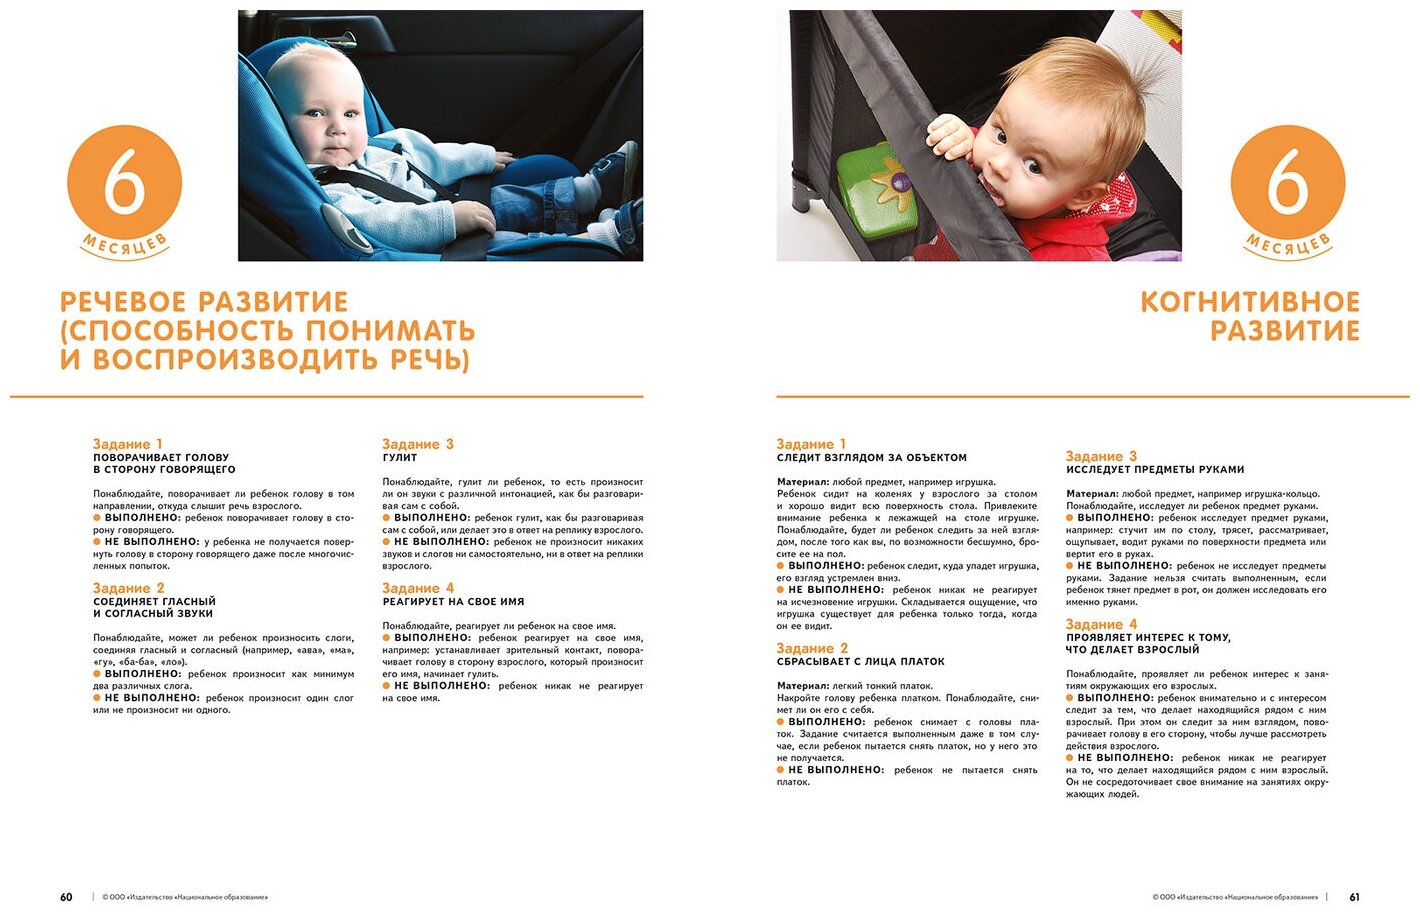 Наблюдение за развитием детей от 3 до 48 месяцев и протоколирование результатов. ДО - фото №4